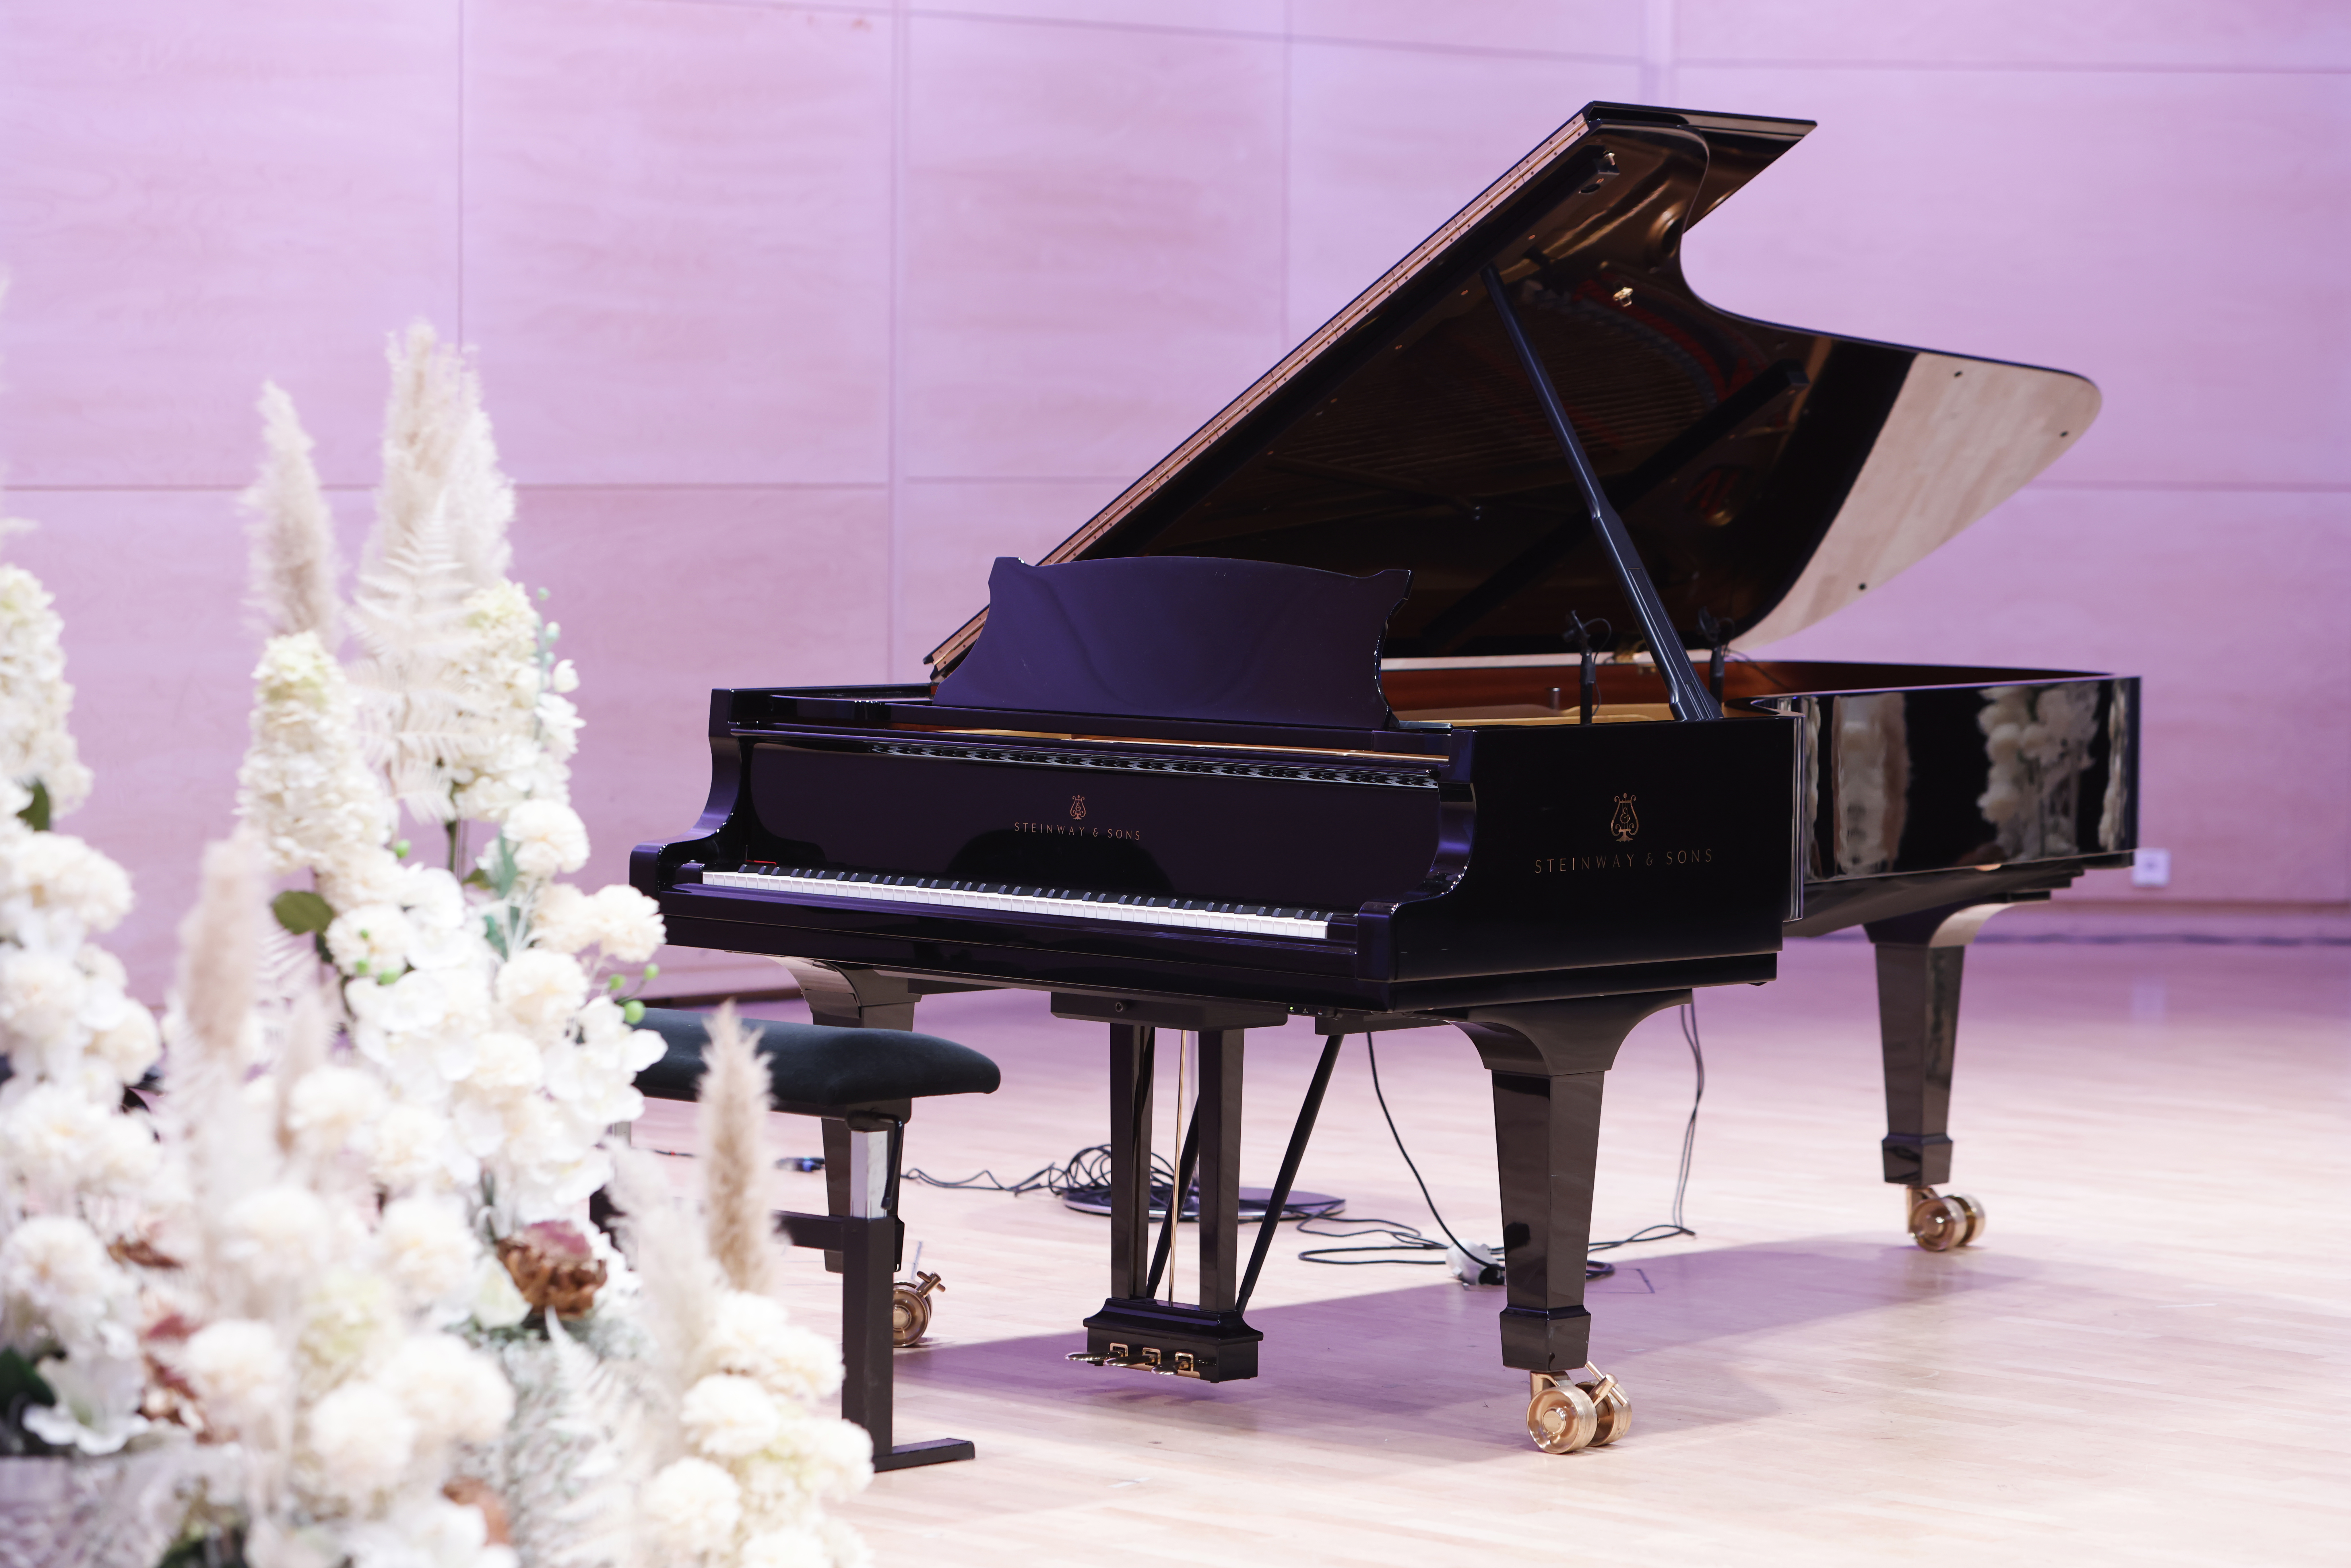 Piano lavalla pinkissä valaistuksessa, valkoisia kukkia edustalla.